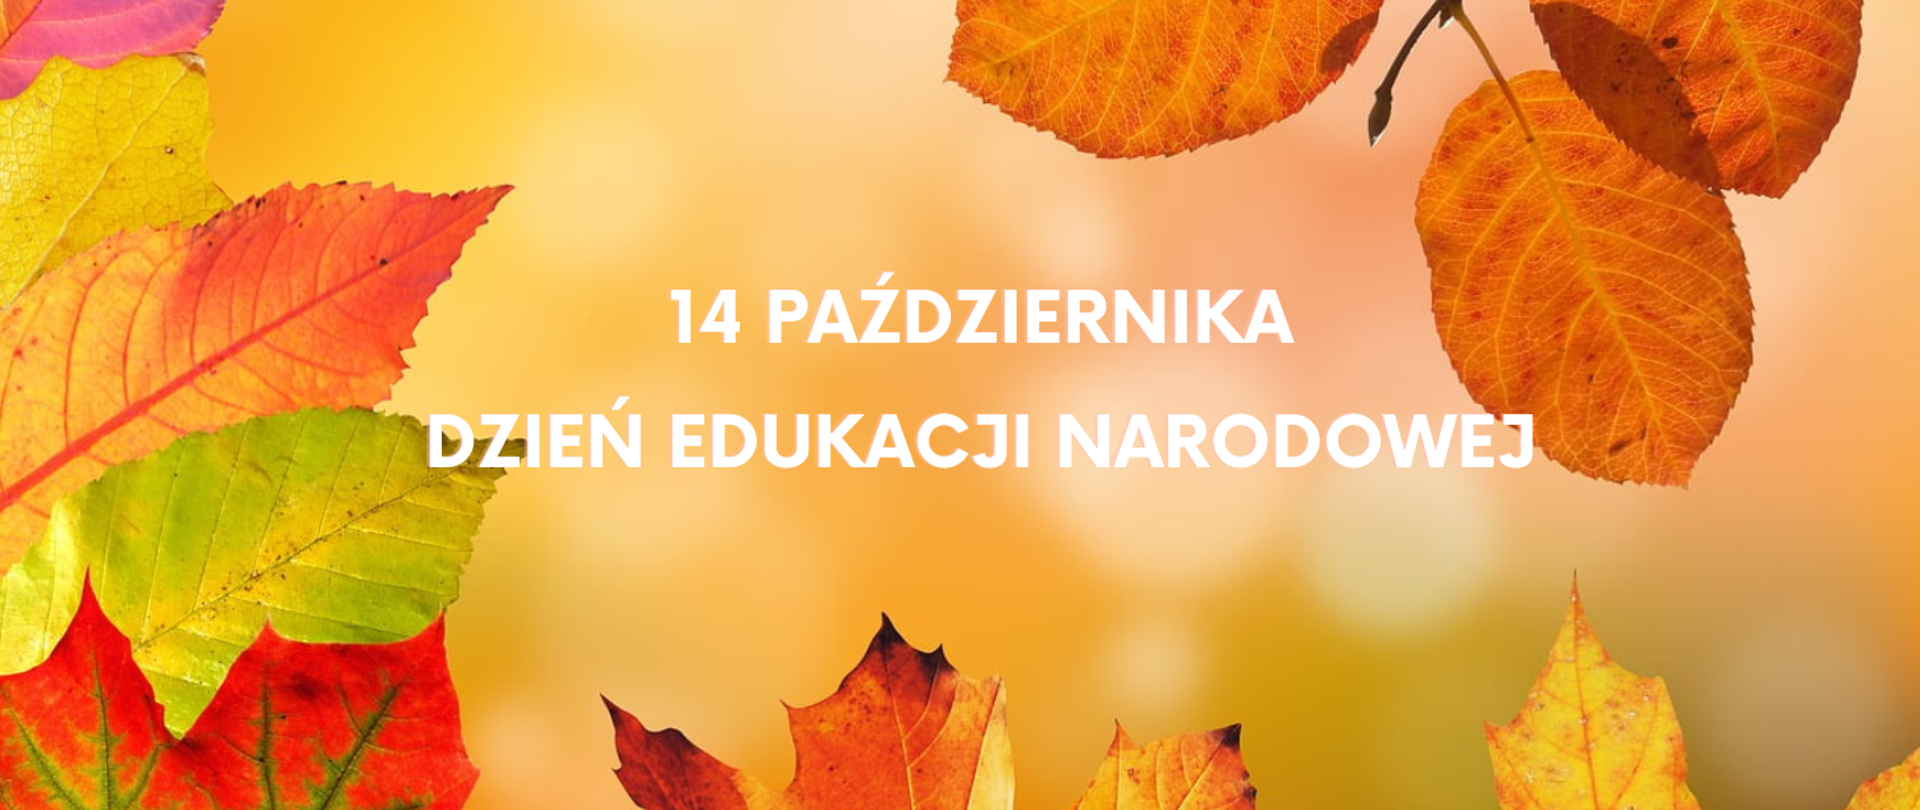 Na jasno brązowym tle z lewej strony zdjęcia, u dołu oraz u góry kolorowe fragmenty liści jesiennych. W centralnej części obrazka biały napis: "14 października Dzień Edukacji Narodowej"